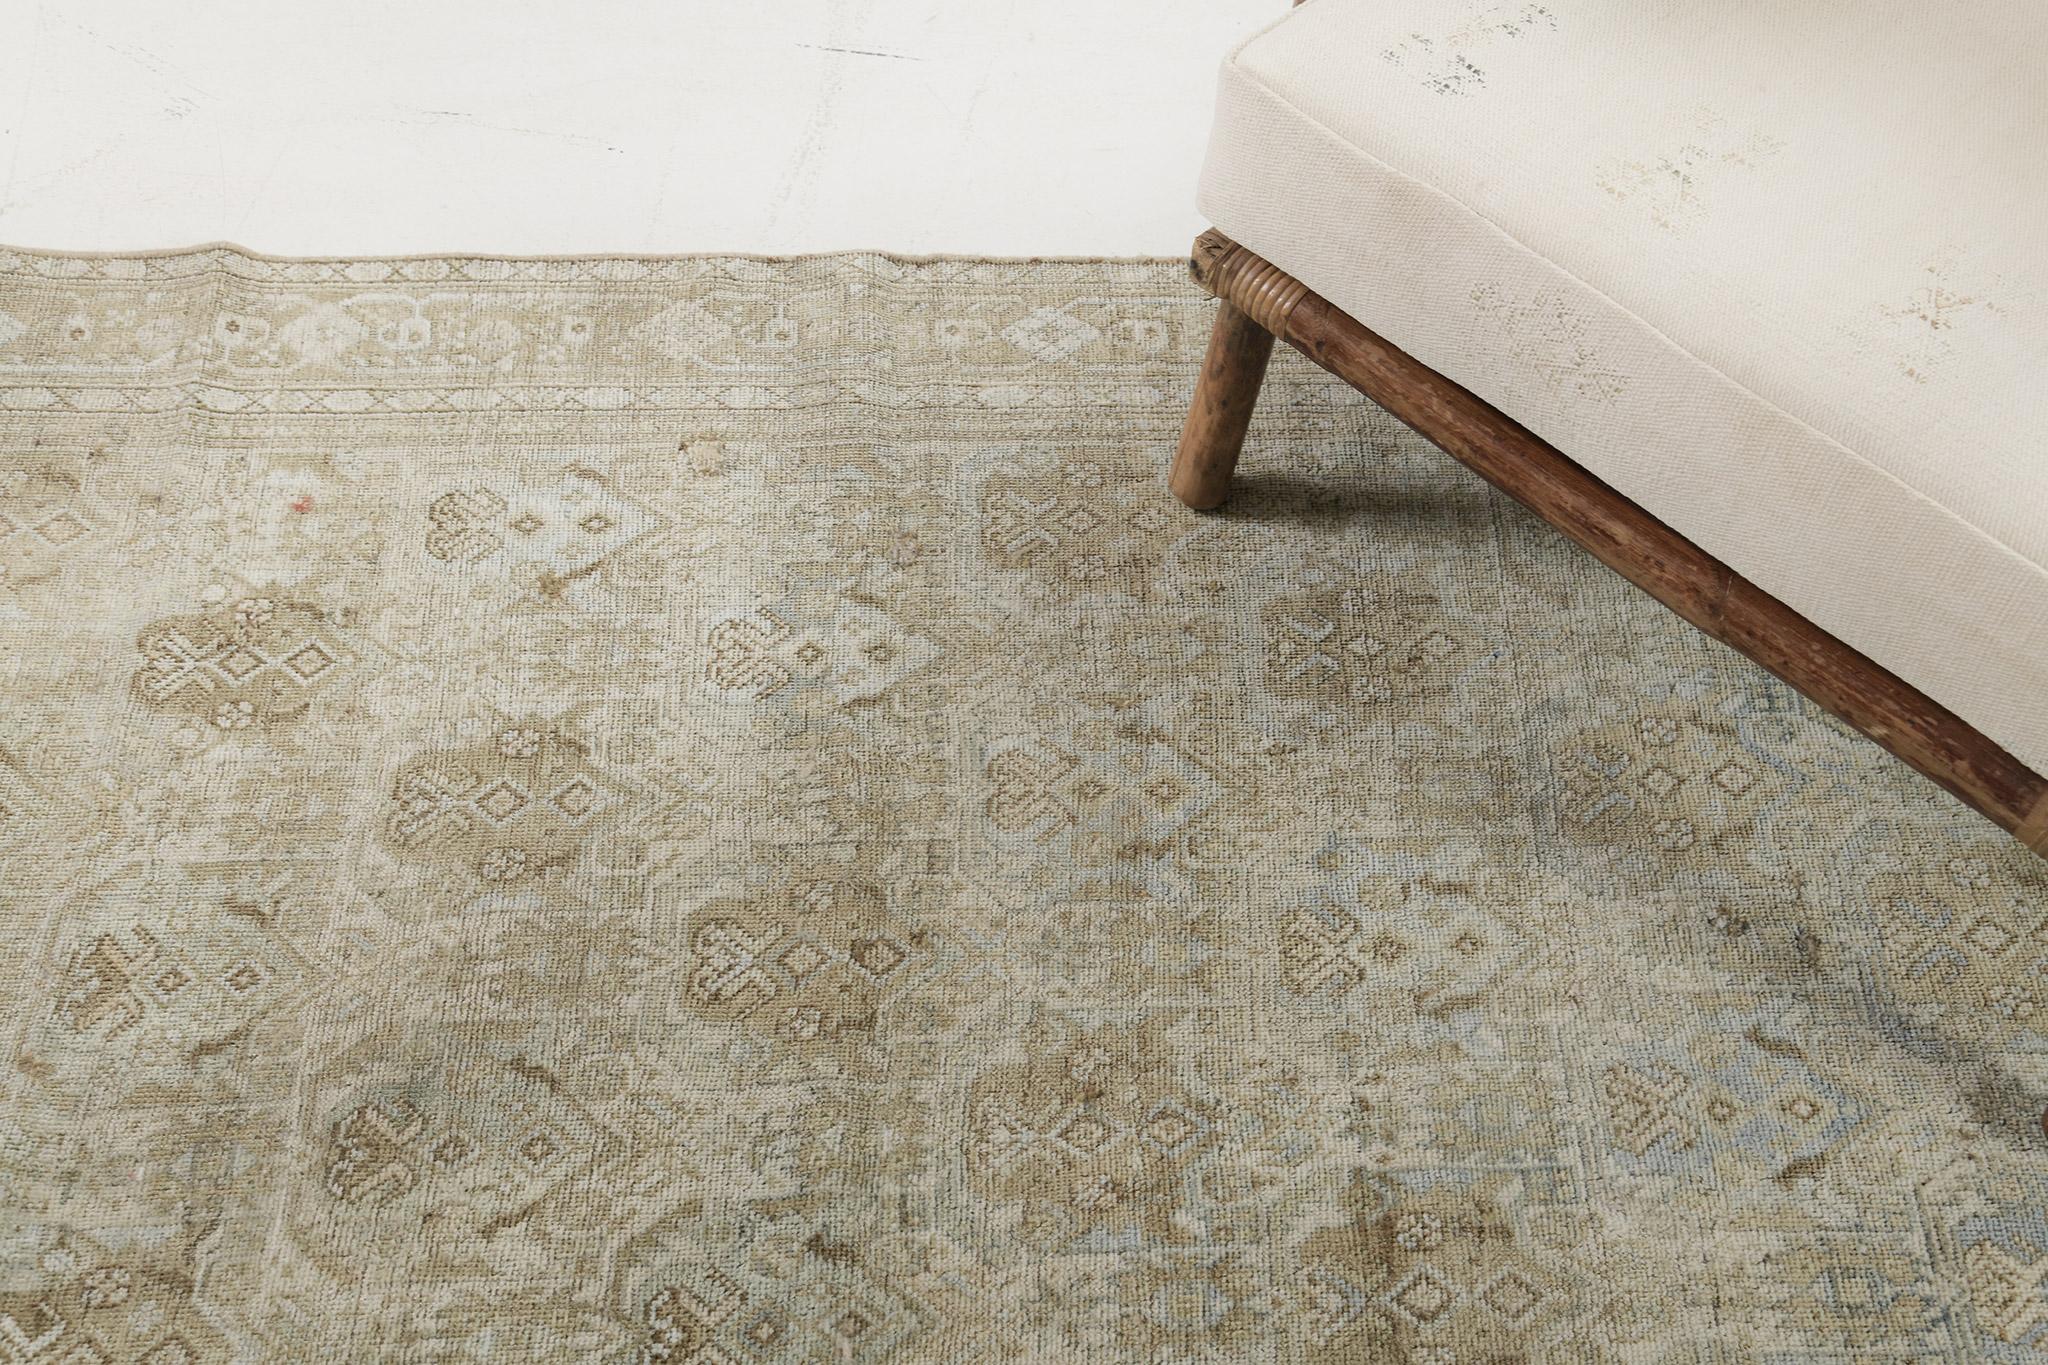 Ce tapis présente un style audacieux et magnifique qui est facilement reconnaissable sur le marché des tapis. Il présente des couleurs marron et turquoise plus foncées qui contrastent avec les rouges vifs typiques de la plupart des tapis persans